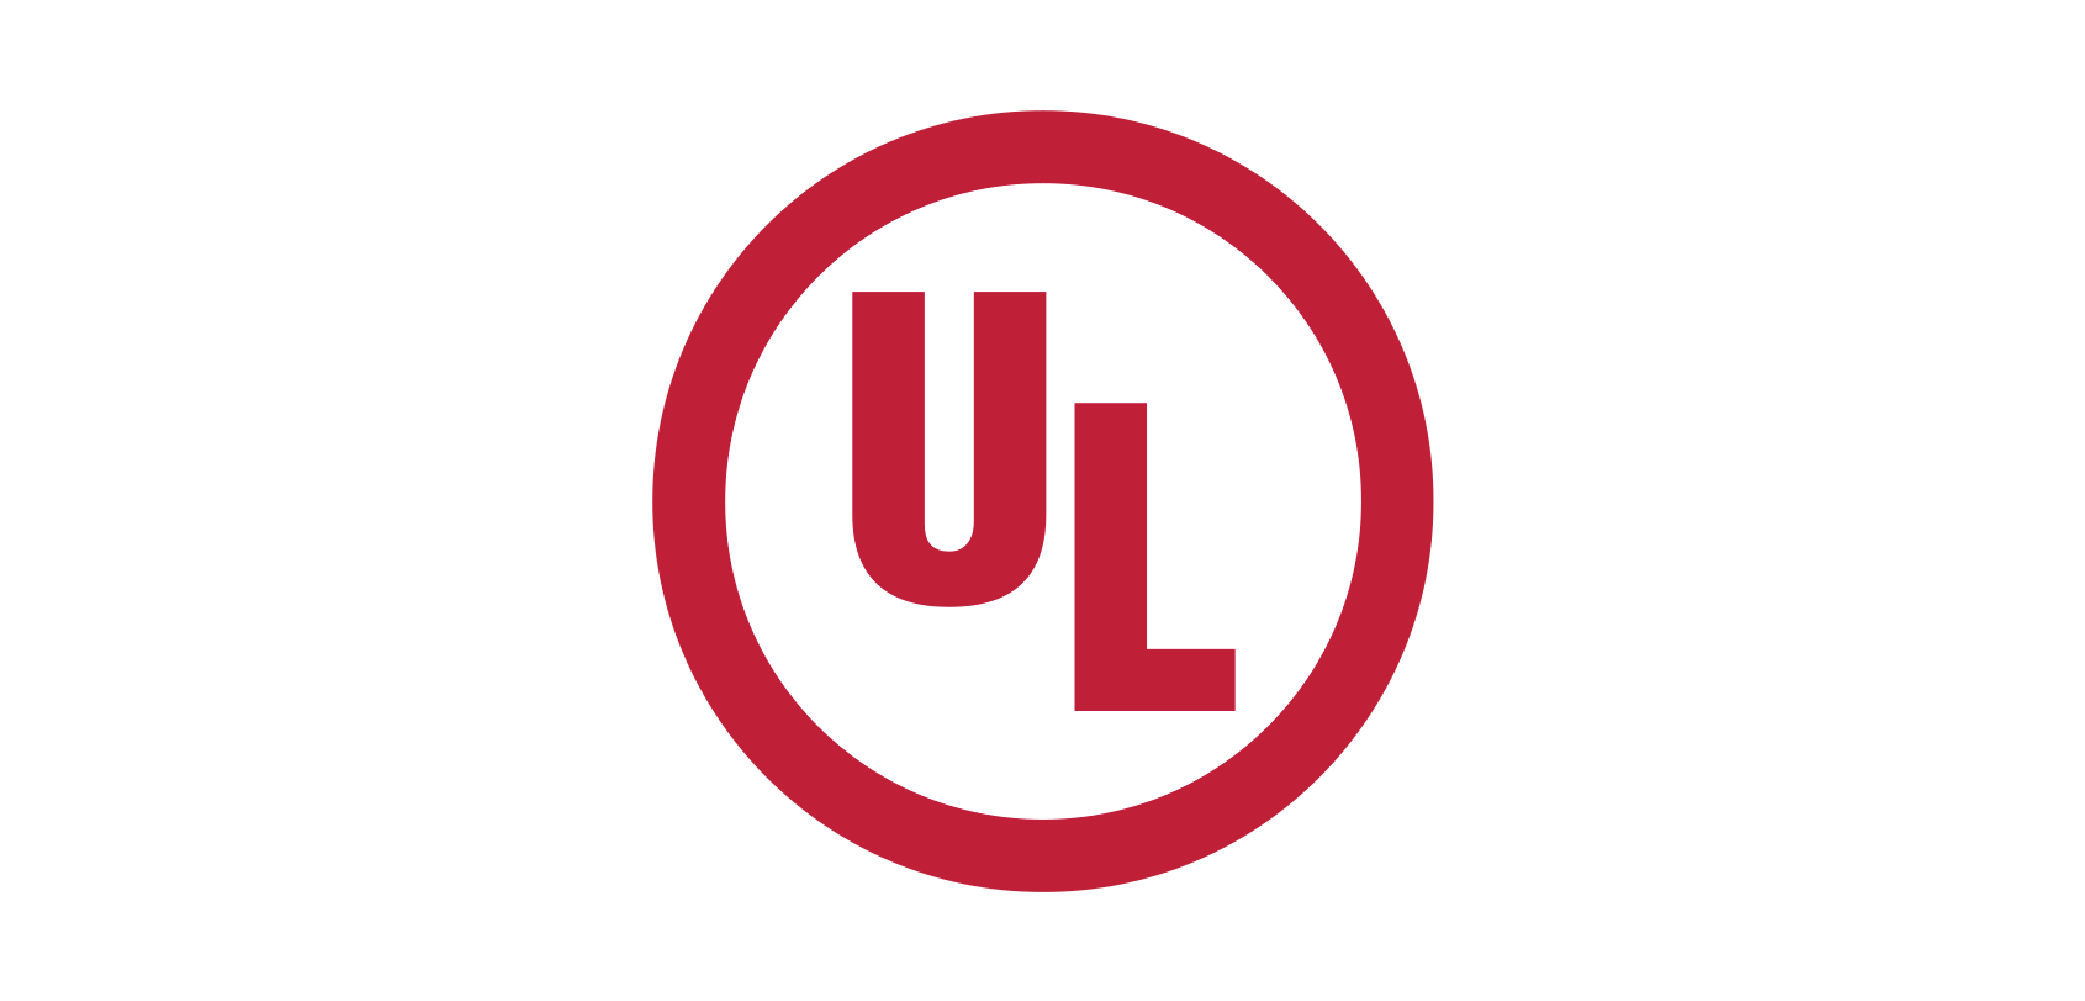 UL-mark-01